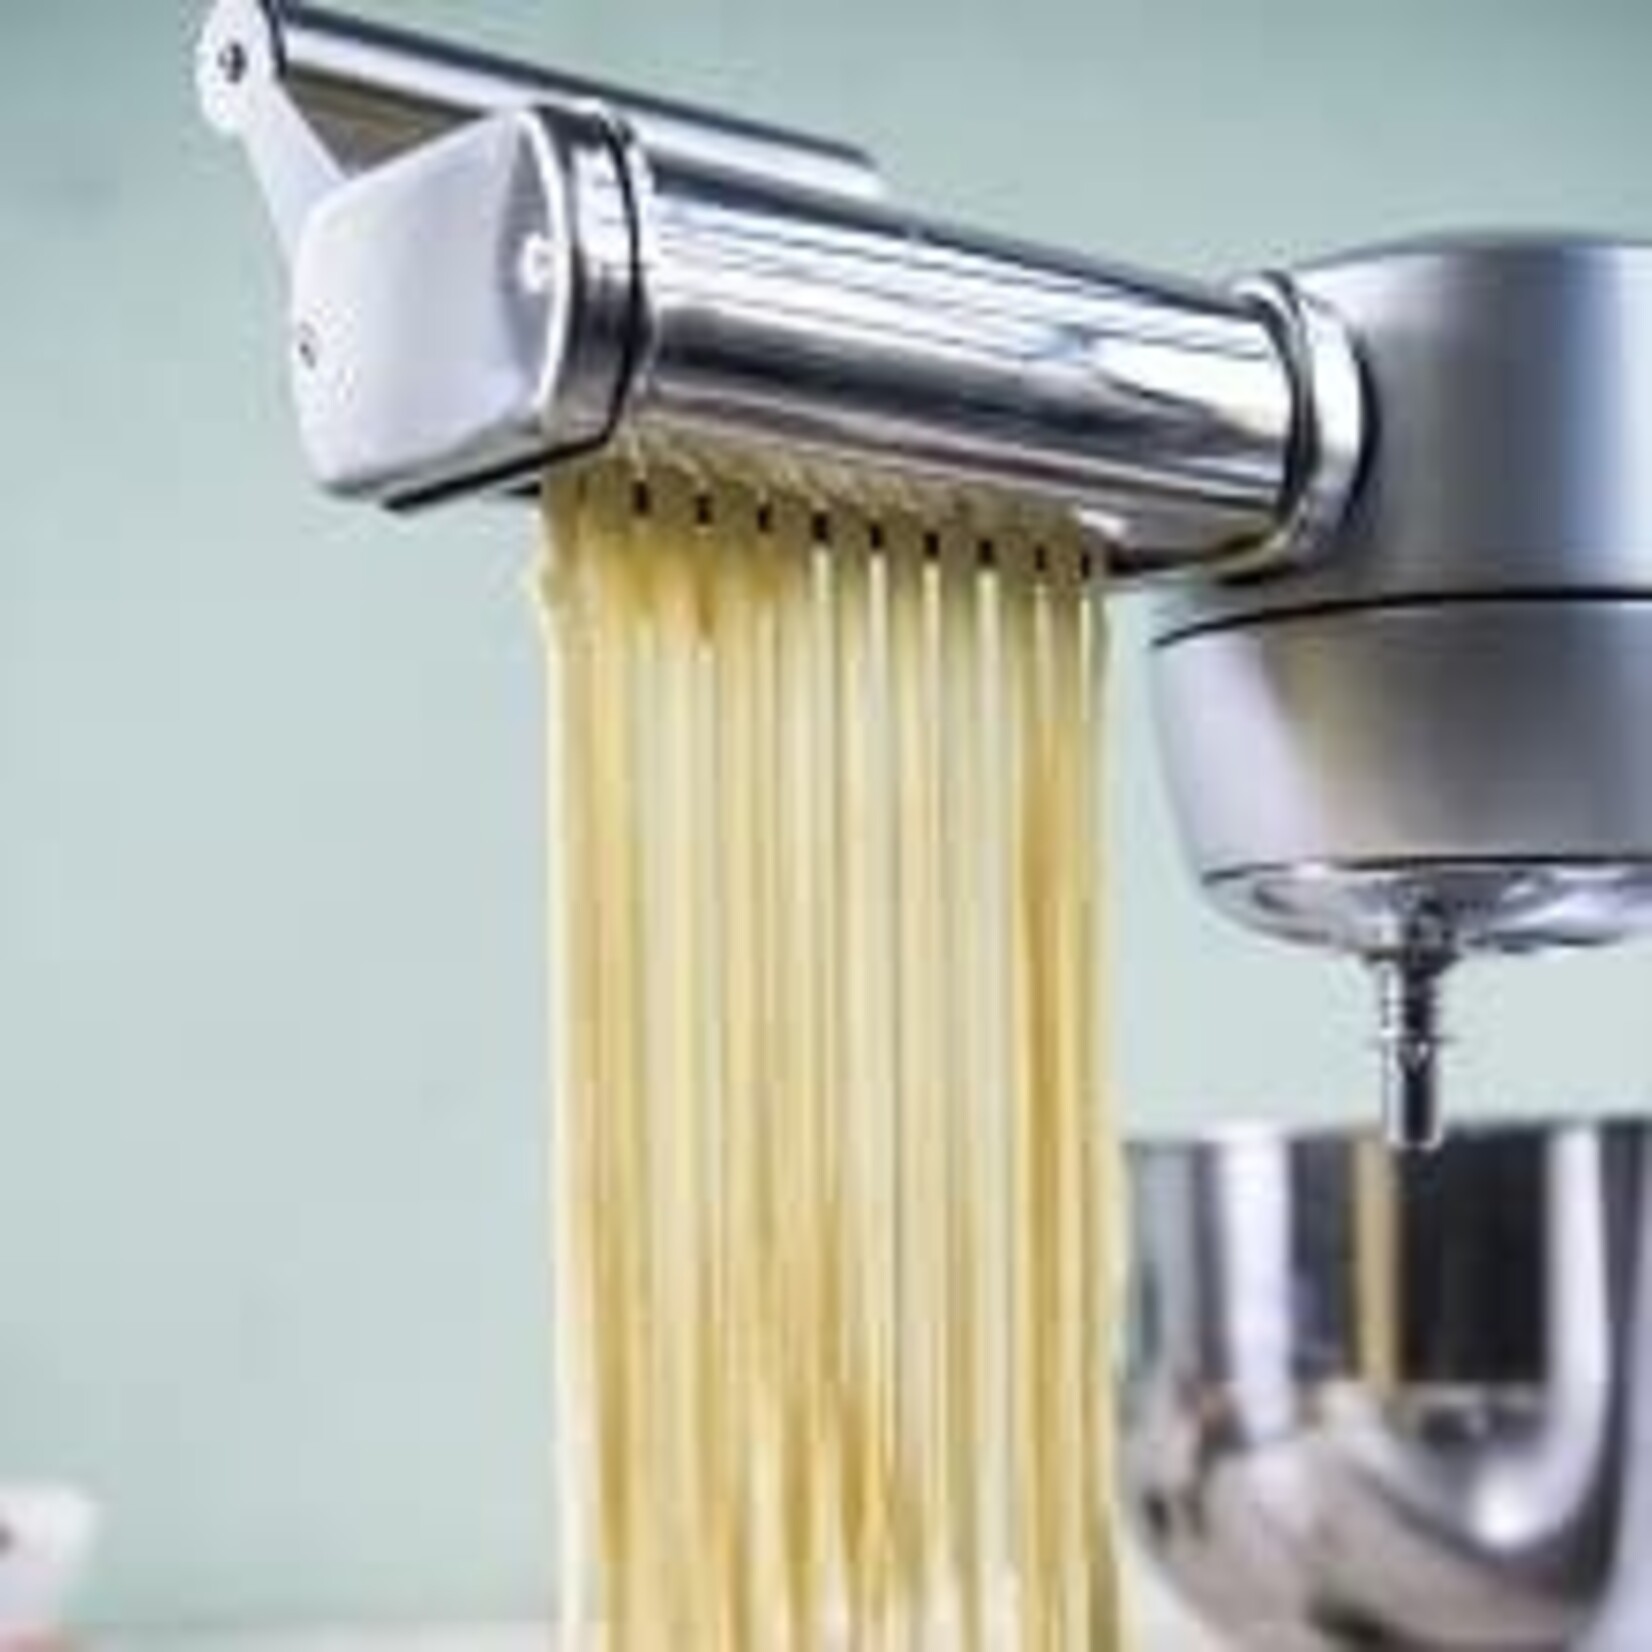 Espressions spaghetti - tagliatelle snijder Espressions Combo Mixmaster pasta cutter set Espressions EP9552